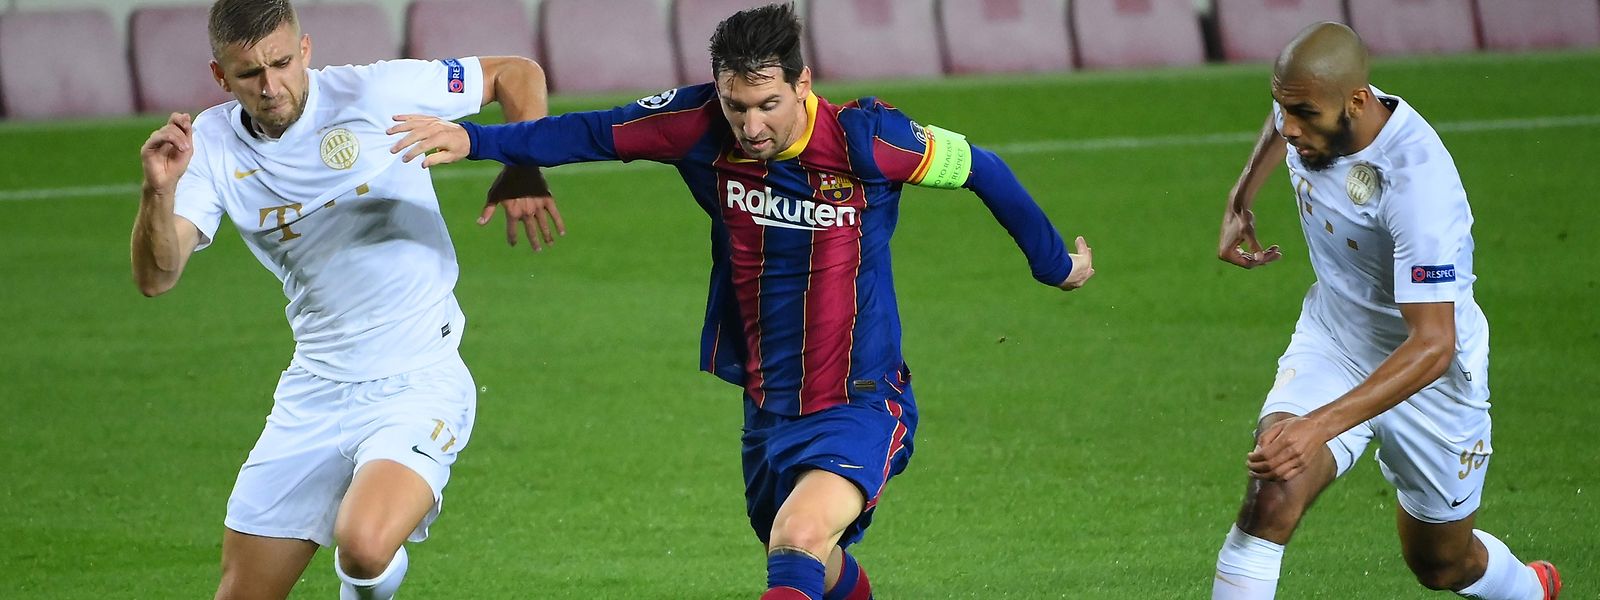 Auteur d'un but sur penalty, Lionel Messi - qui s'infiltre ici entre deux défenseurs de Ferencvaros - a brillé de mille feux mardi soir au Camp Nou